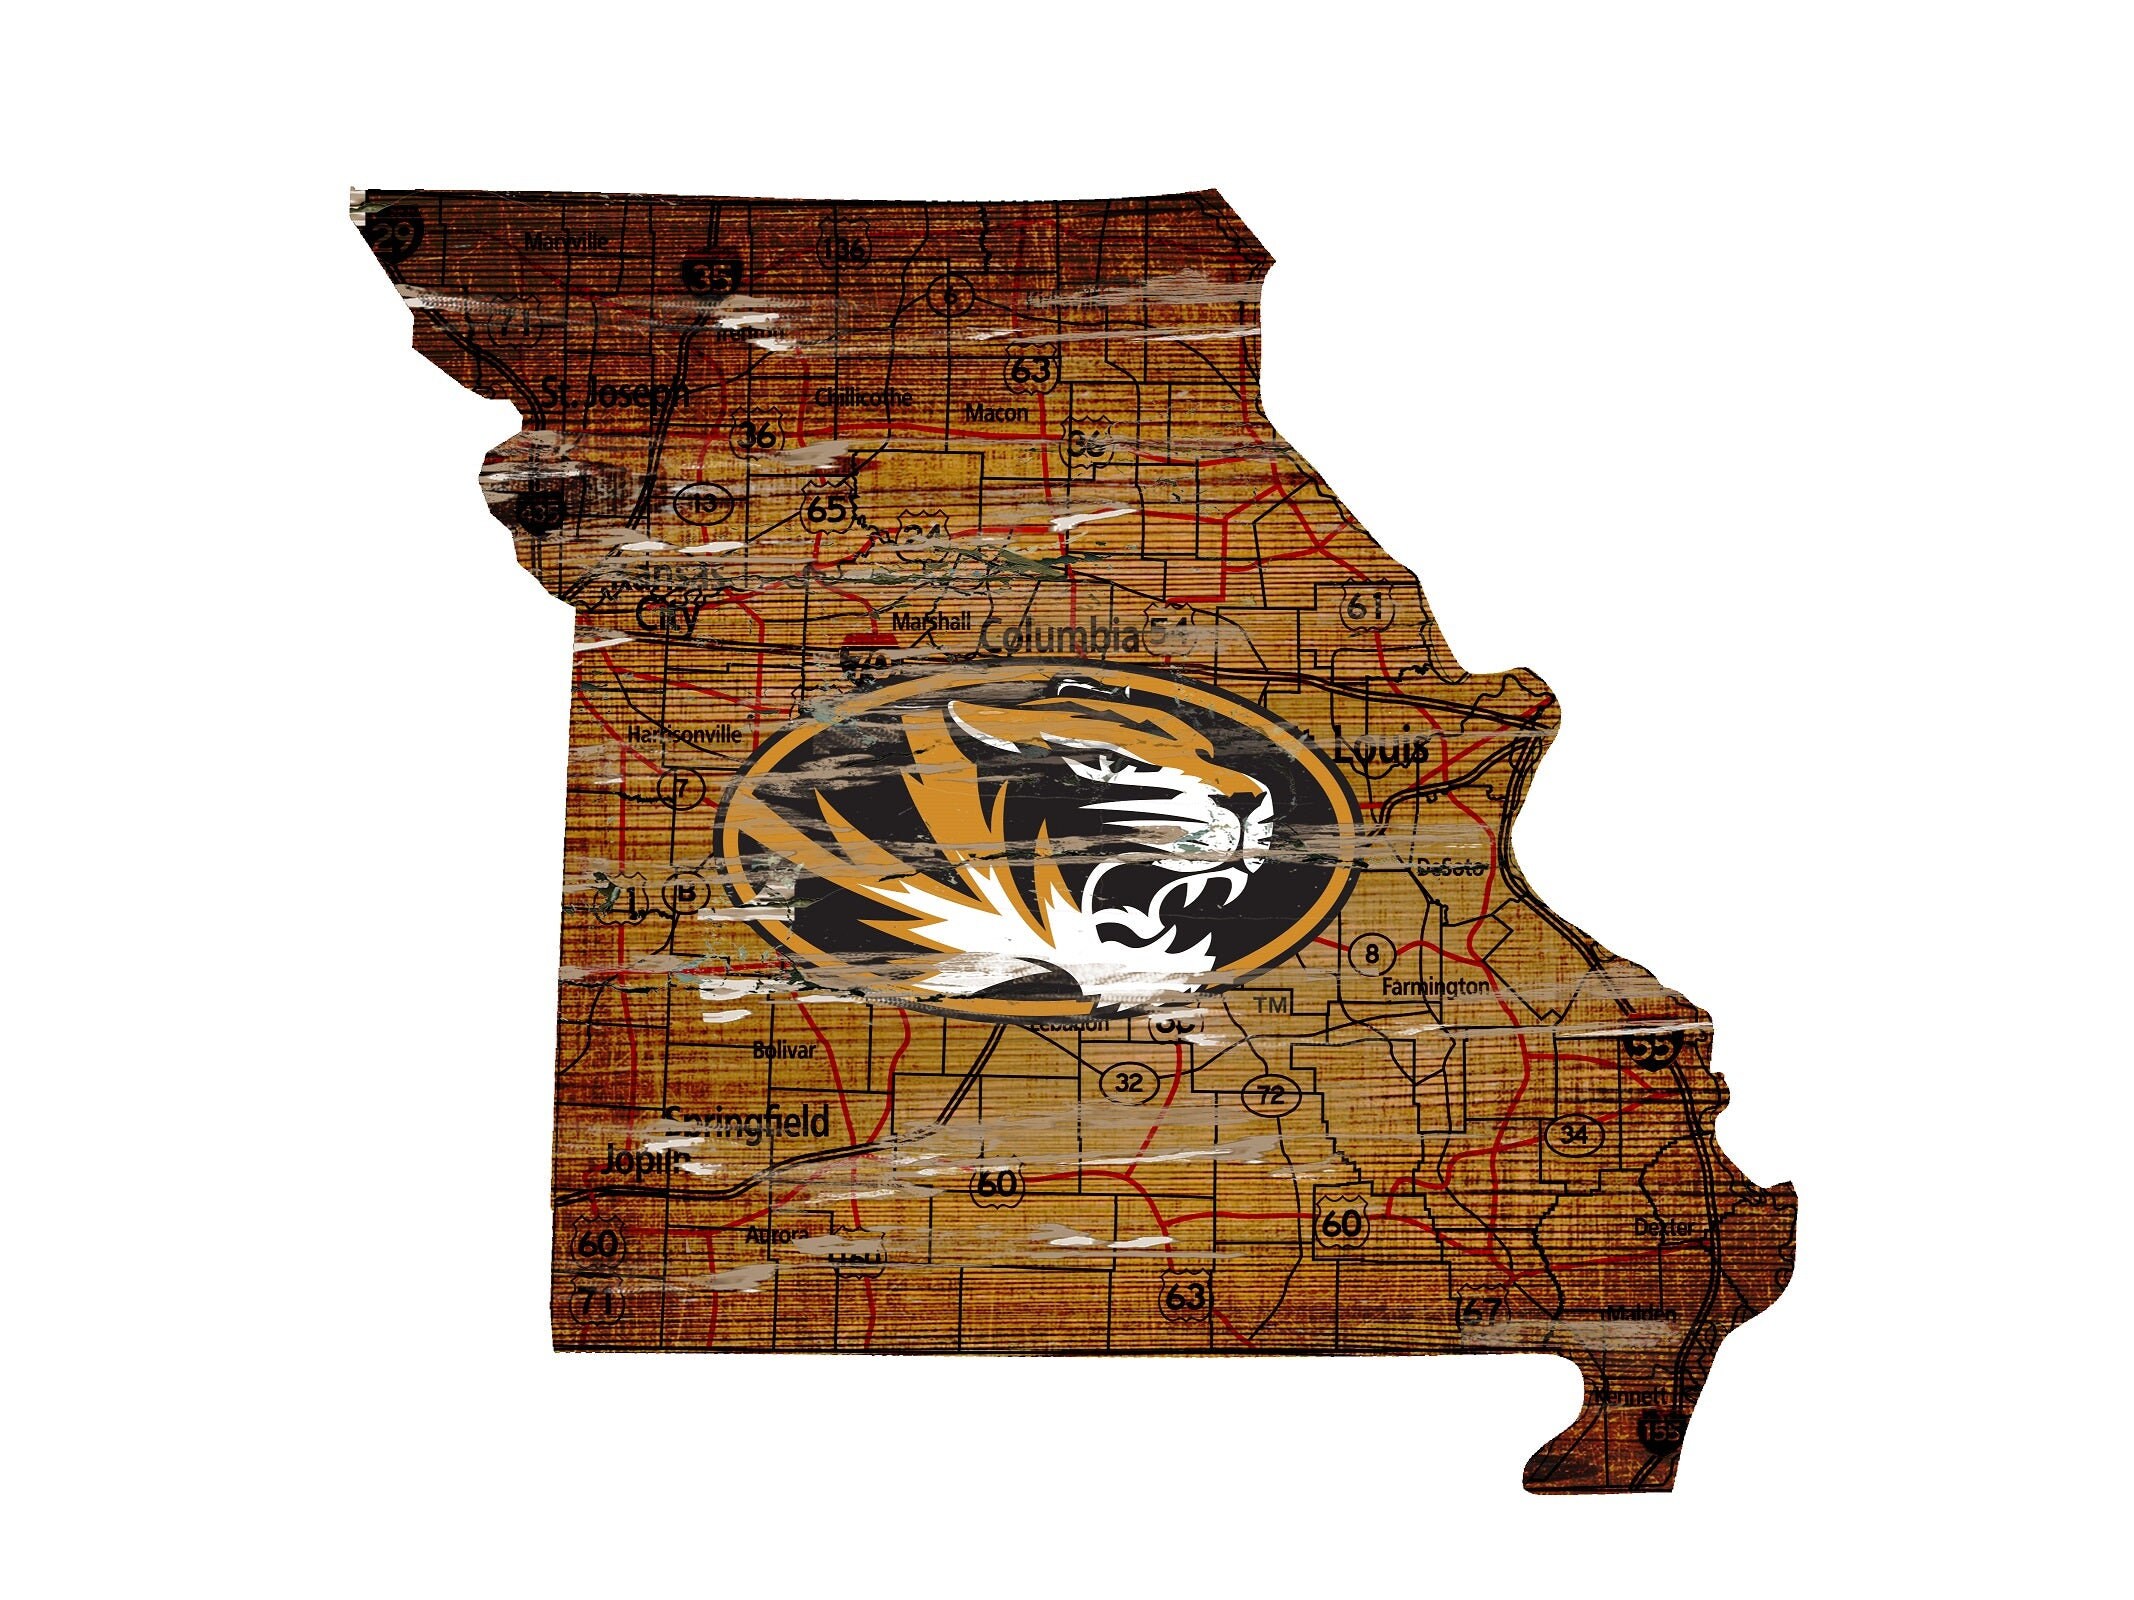 tiger woods logo design